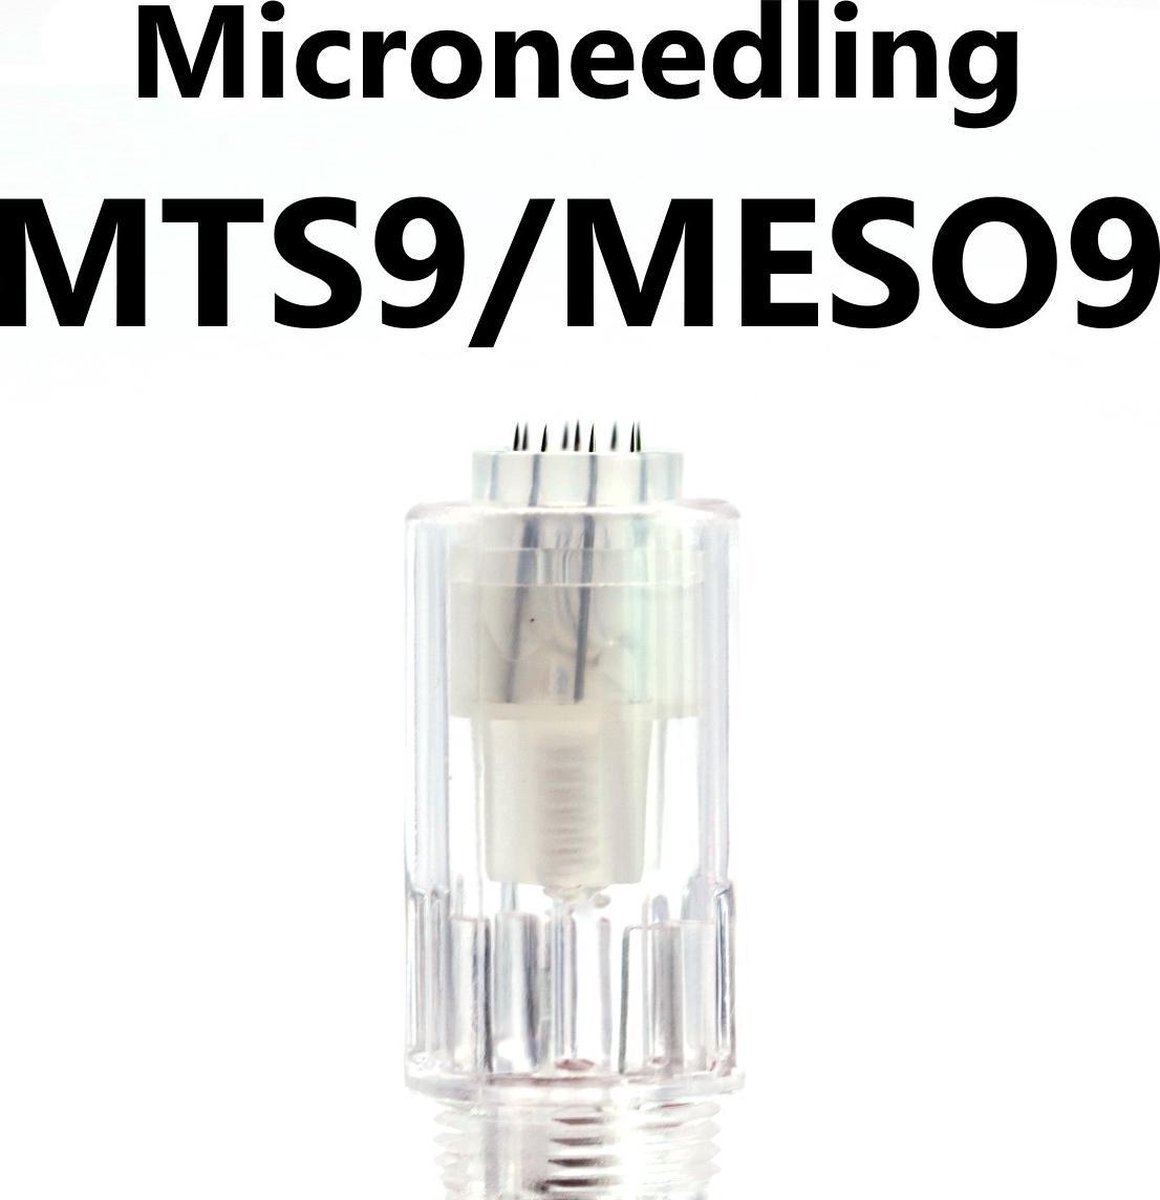 Mastor - PMU Naalden – Meso 9/ Mts 9 – ook verkrijgbaar in R1, R3, R5, F5, V9, V12, meso9 (mts9), meso12(mts12)